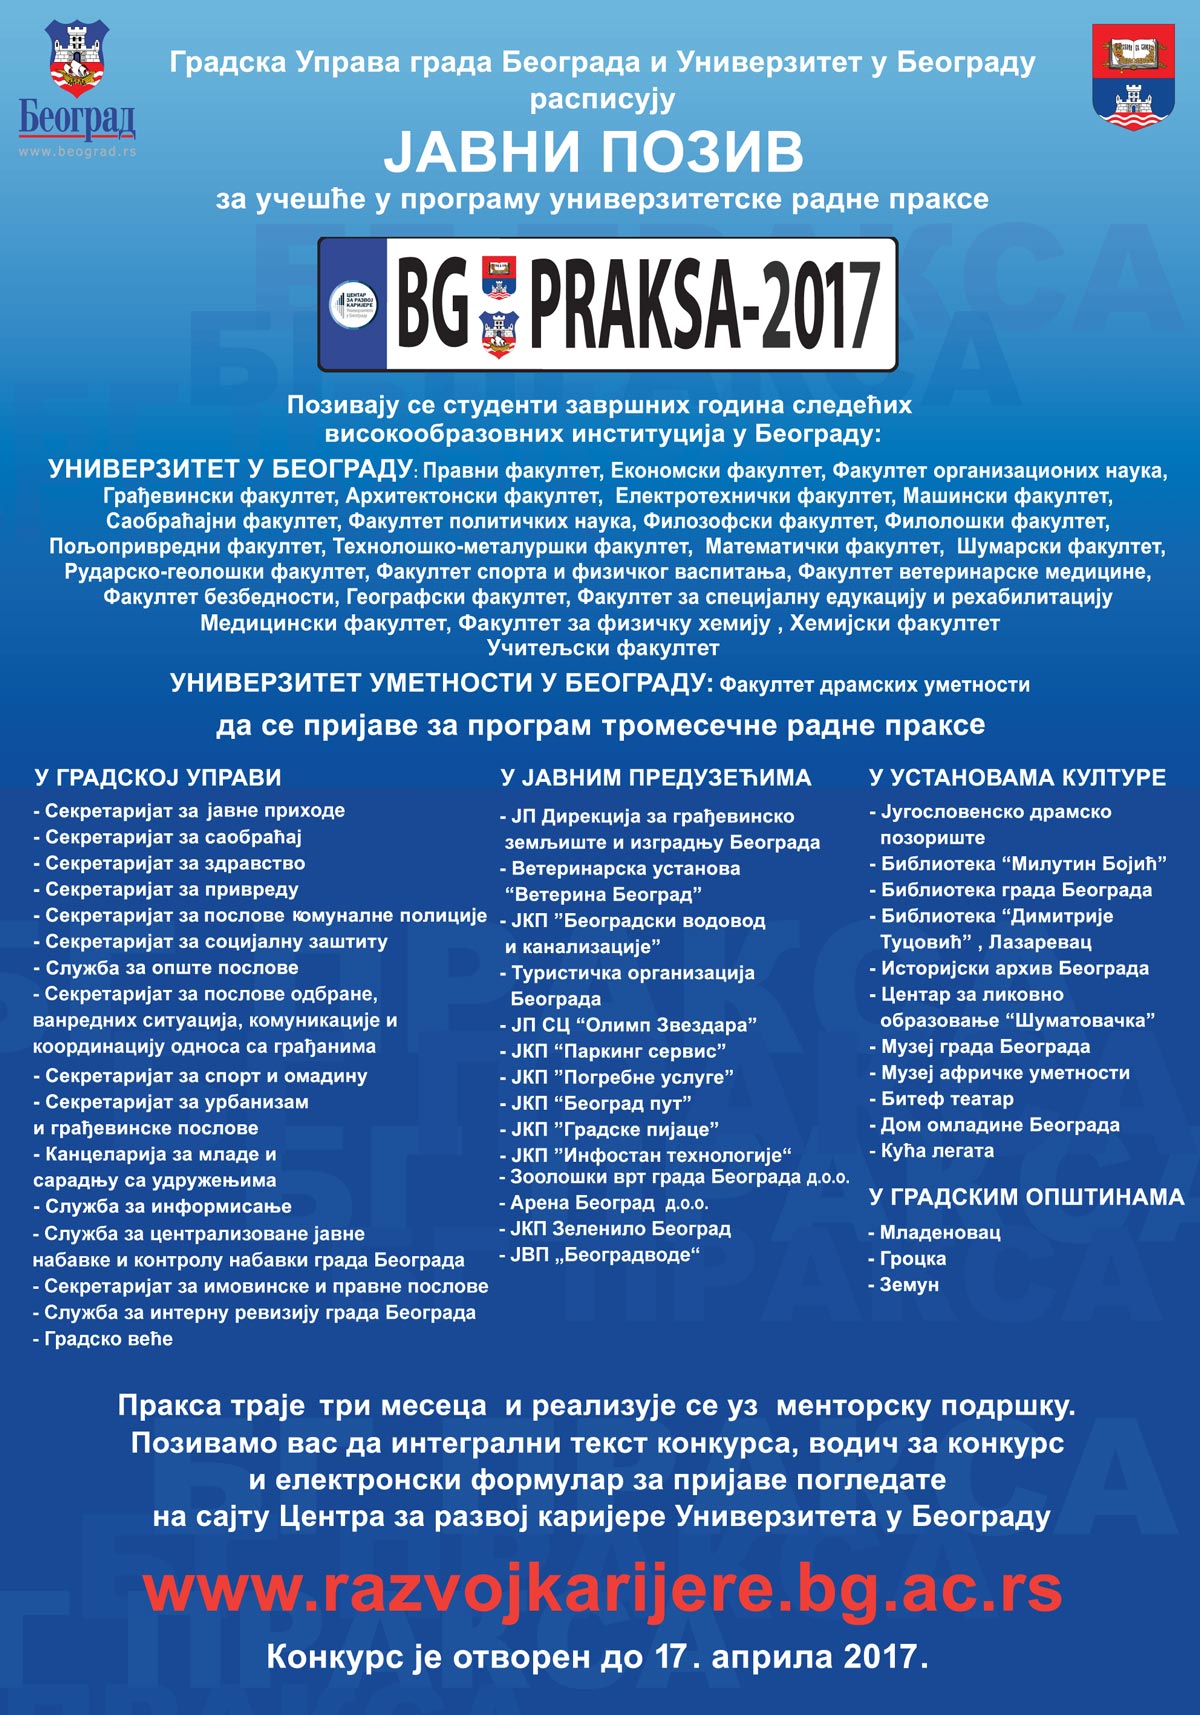 bg praksa 2017 plakat